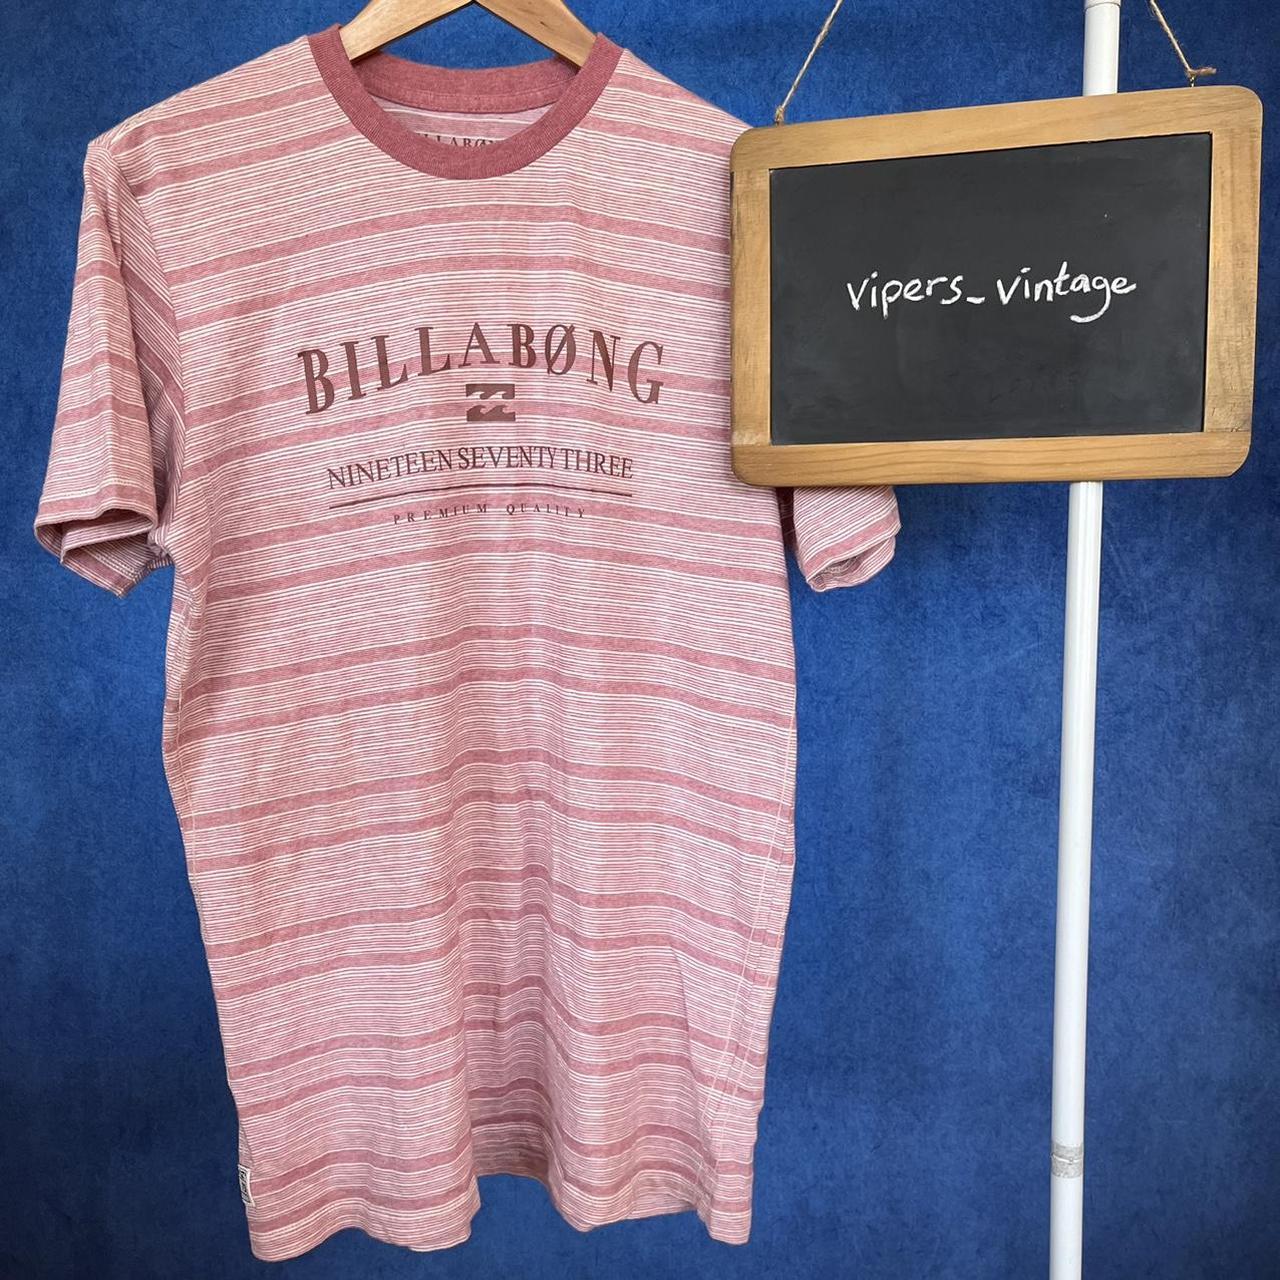 Billabong Men's Red and Pink T-shirt | Depop